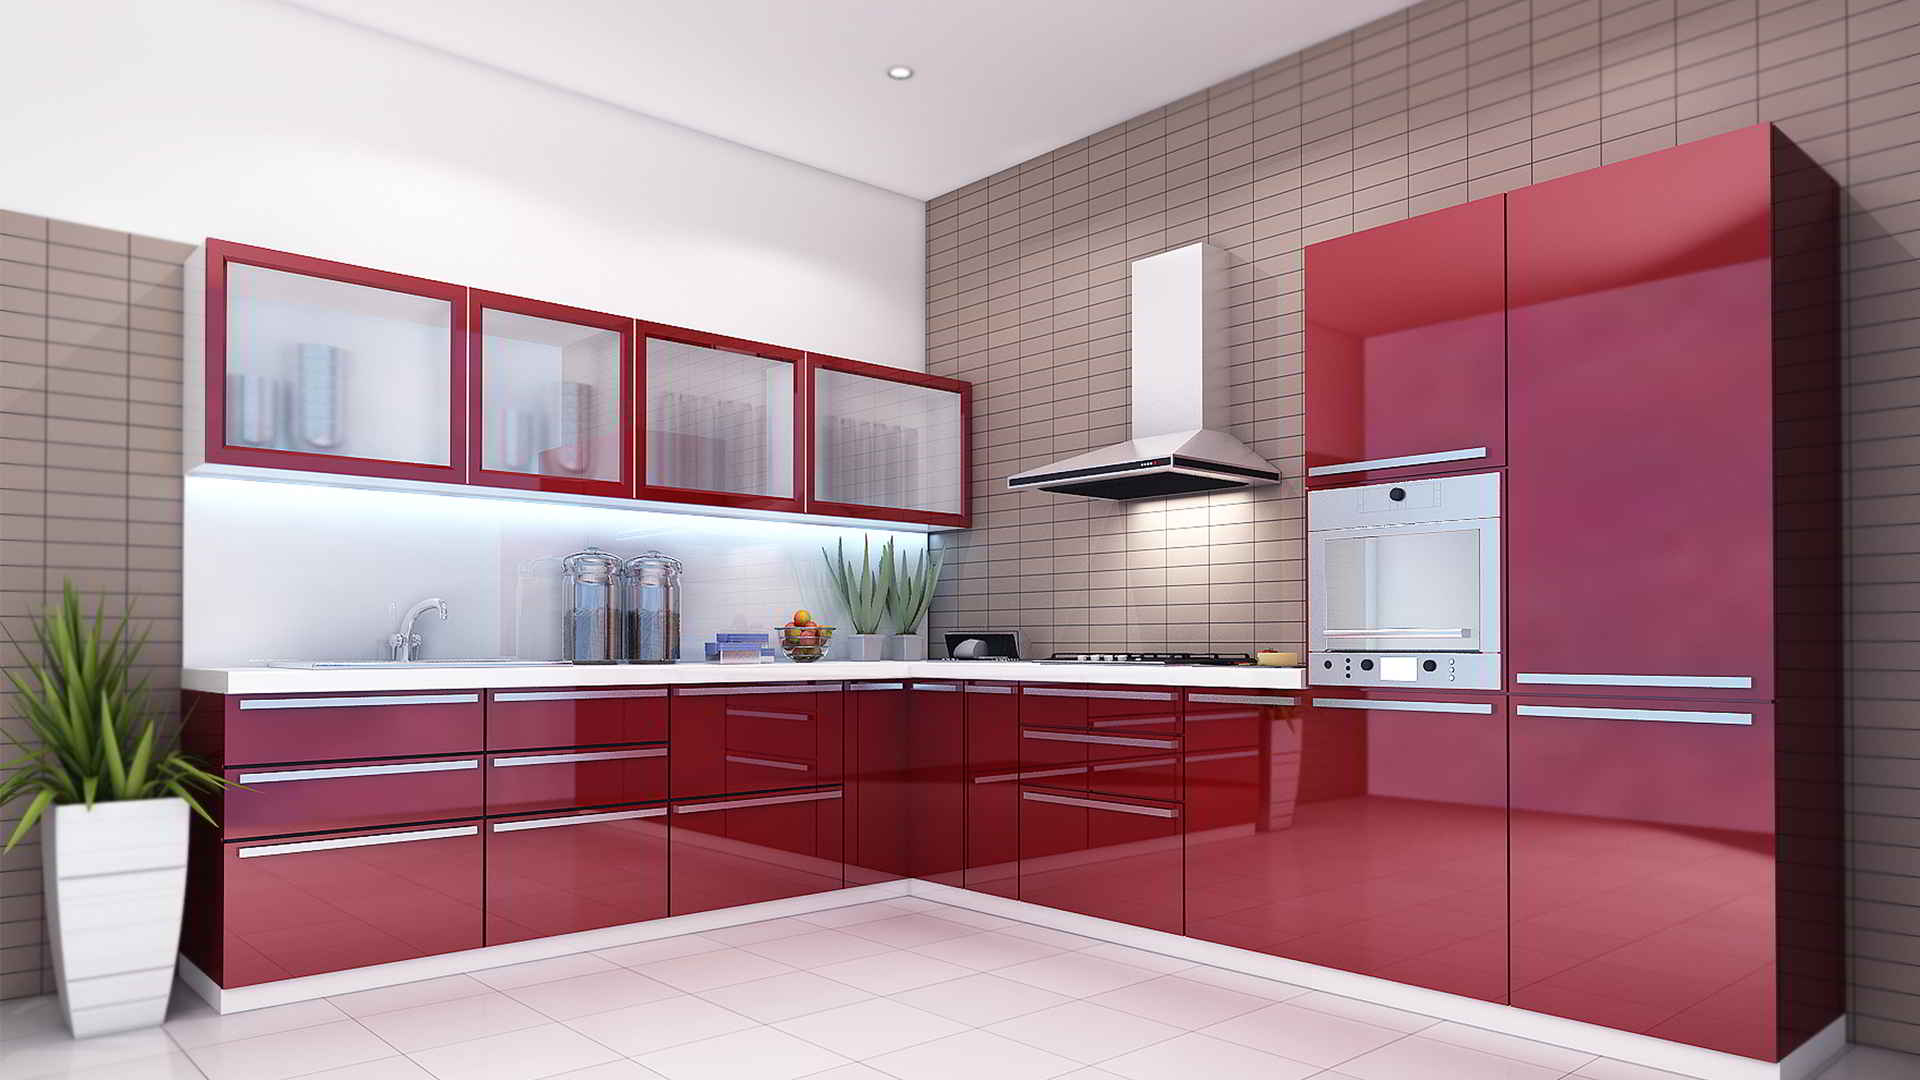 kitchen design hd image